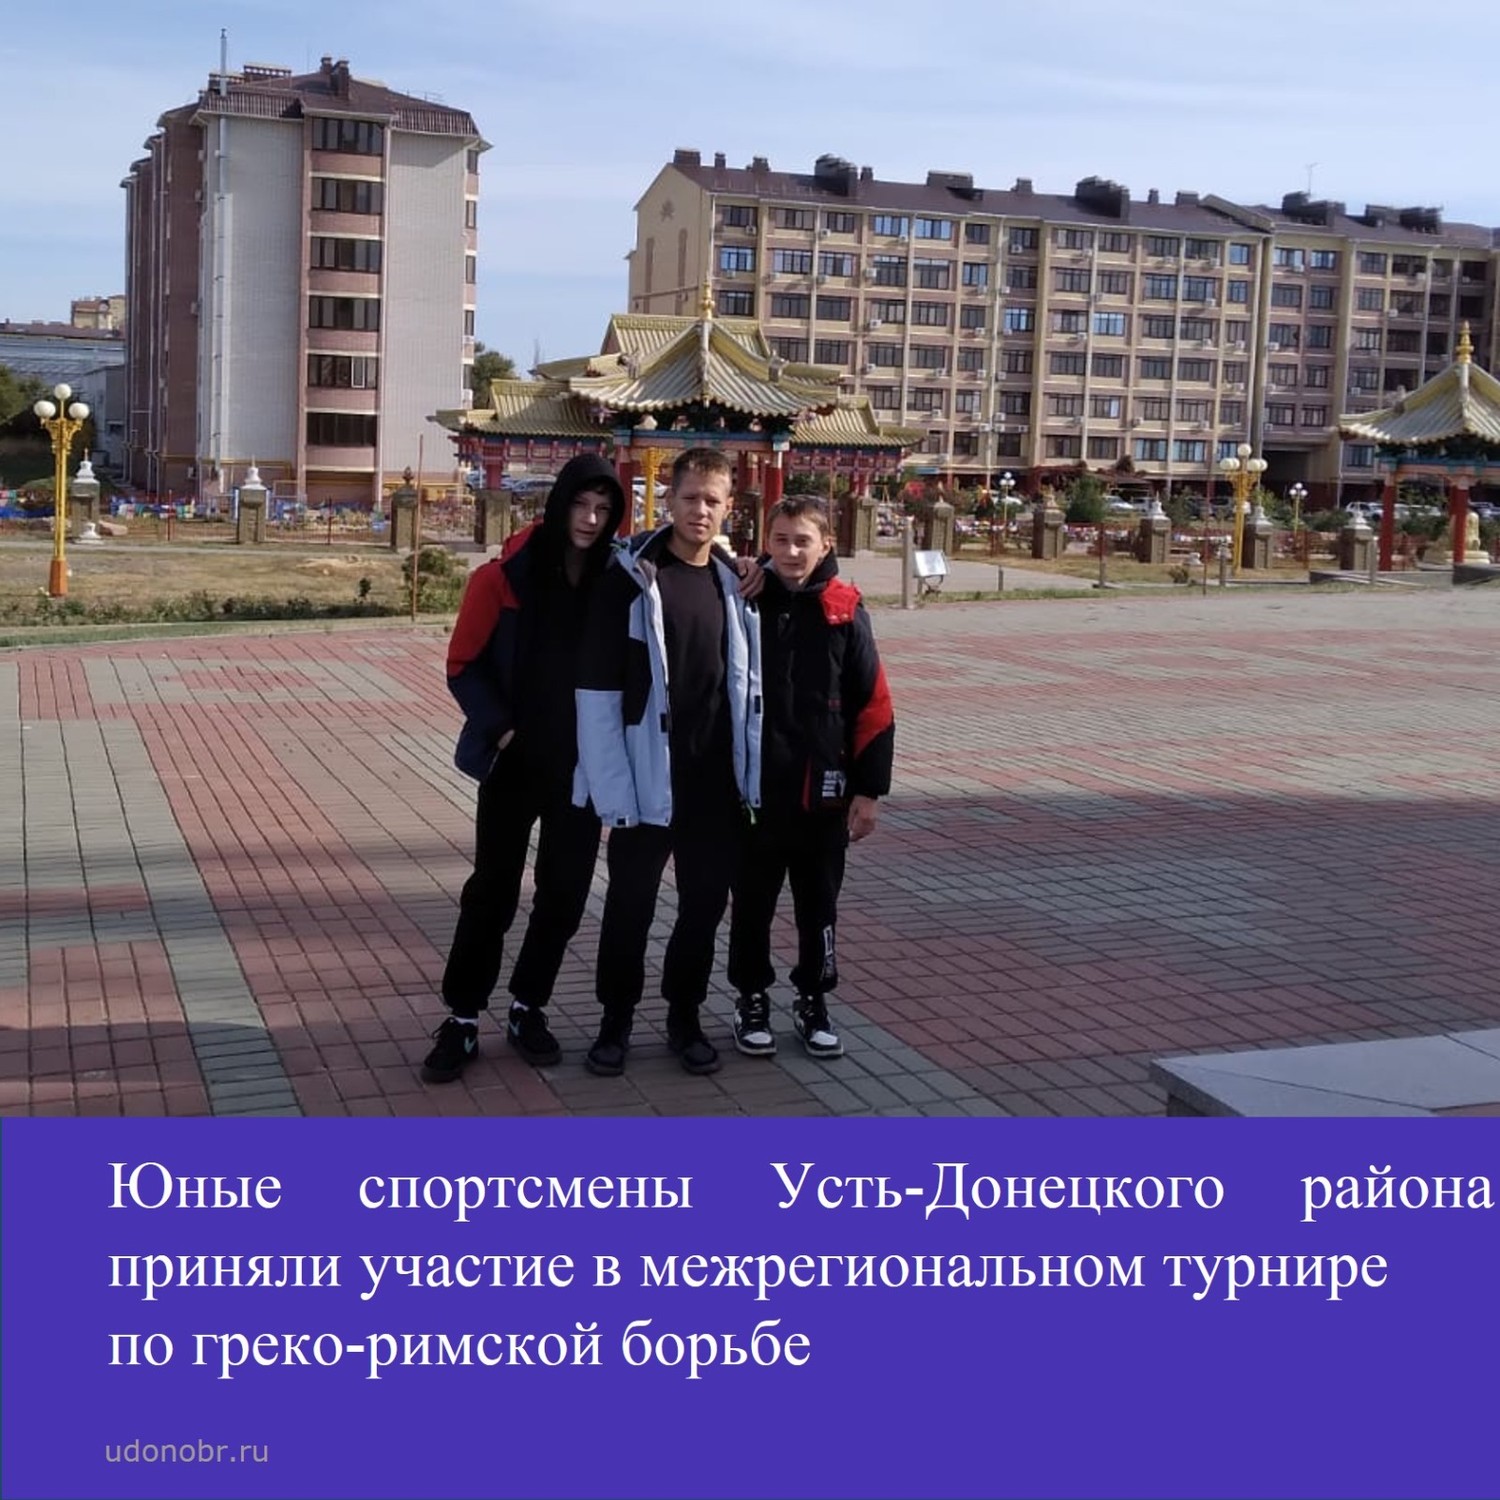 Юные спортсмены Усть-Донецкого района приняли участие в межрегиональном турнире по греко-римской борьбе